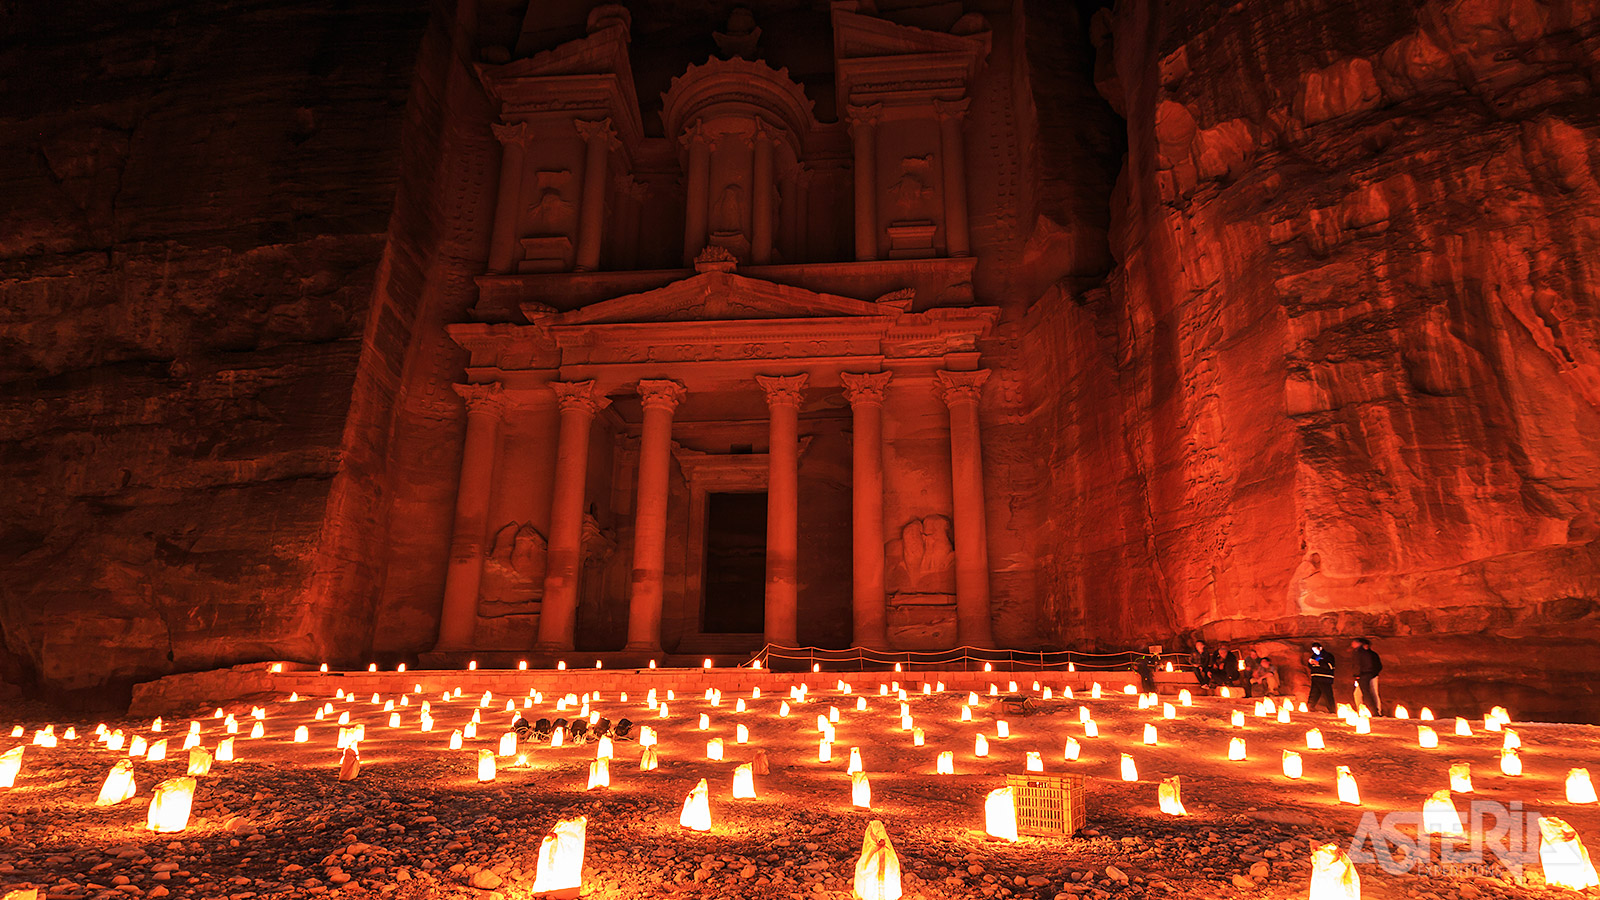 Petra by night, een onvergetelijke ervaring waarbij de hele kloof verlicht wordt met meer dan 1.500 lichtjes